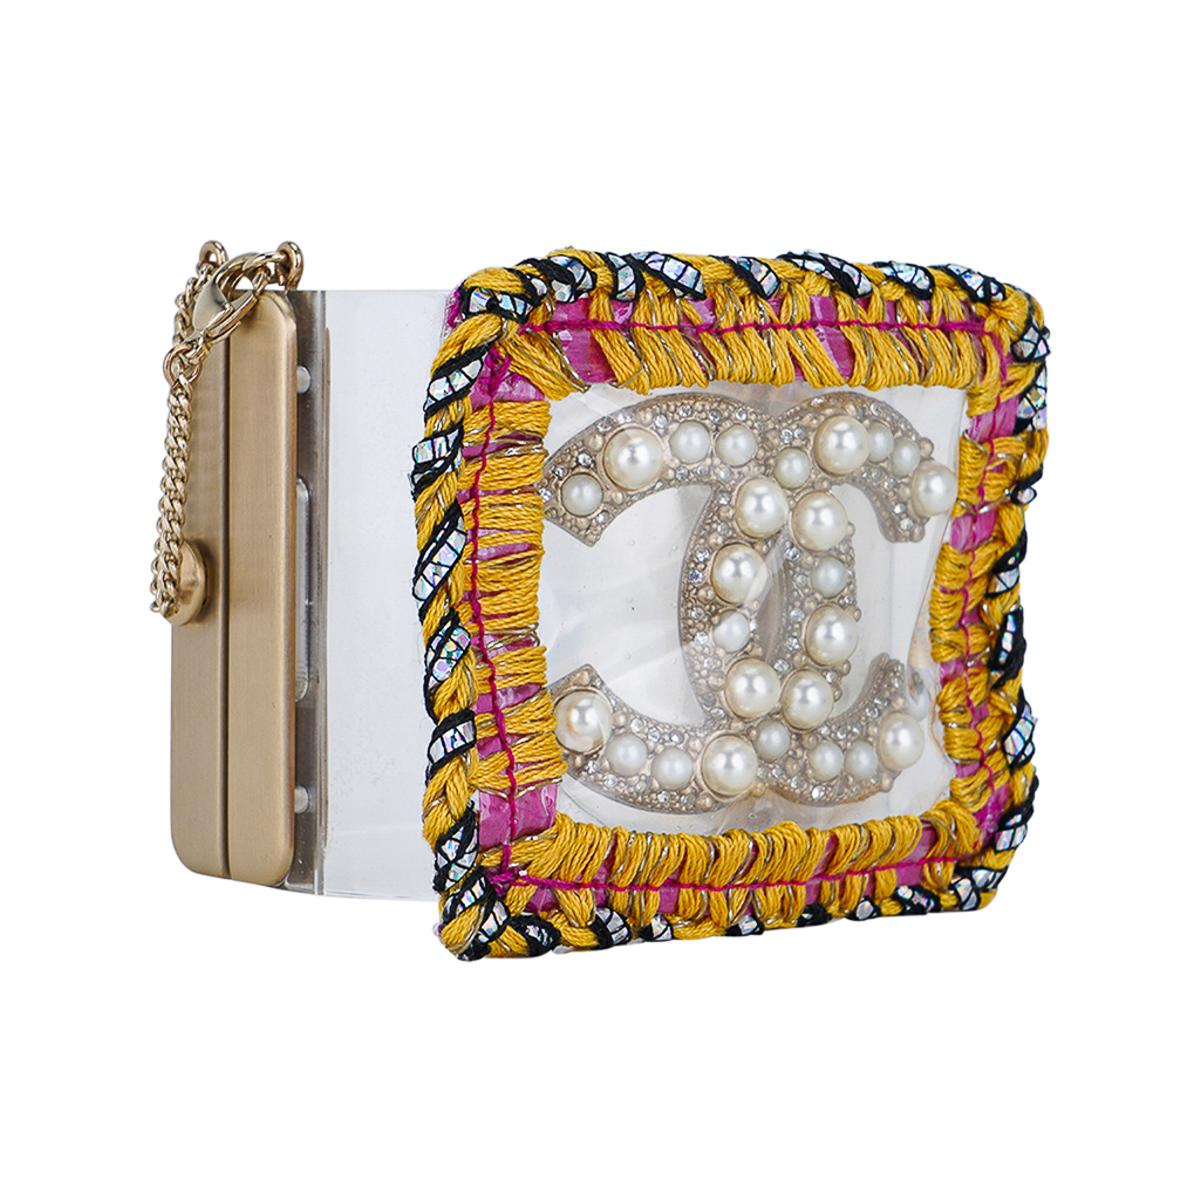 Mightychic propose un bracelet manchette Chanel en lucite, perles et broderies.
CC perlé audacieux enveloppé dans du plastique avec un bord brodé audacieux.
Fermeture à charnière à ressort.
Cette fabuleuse manchette audacieuse est intemporelle et